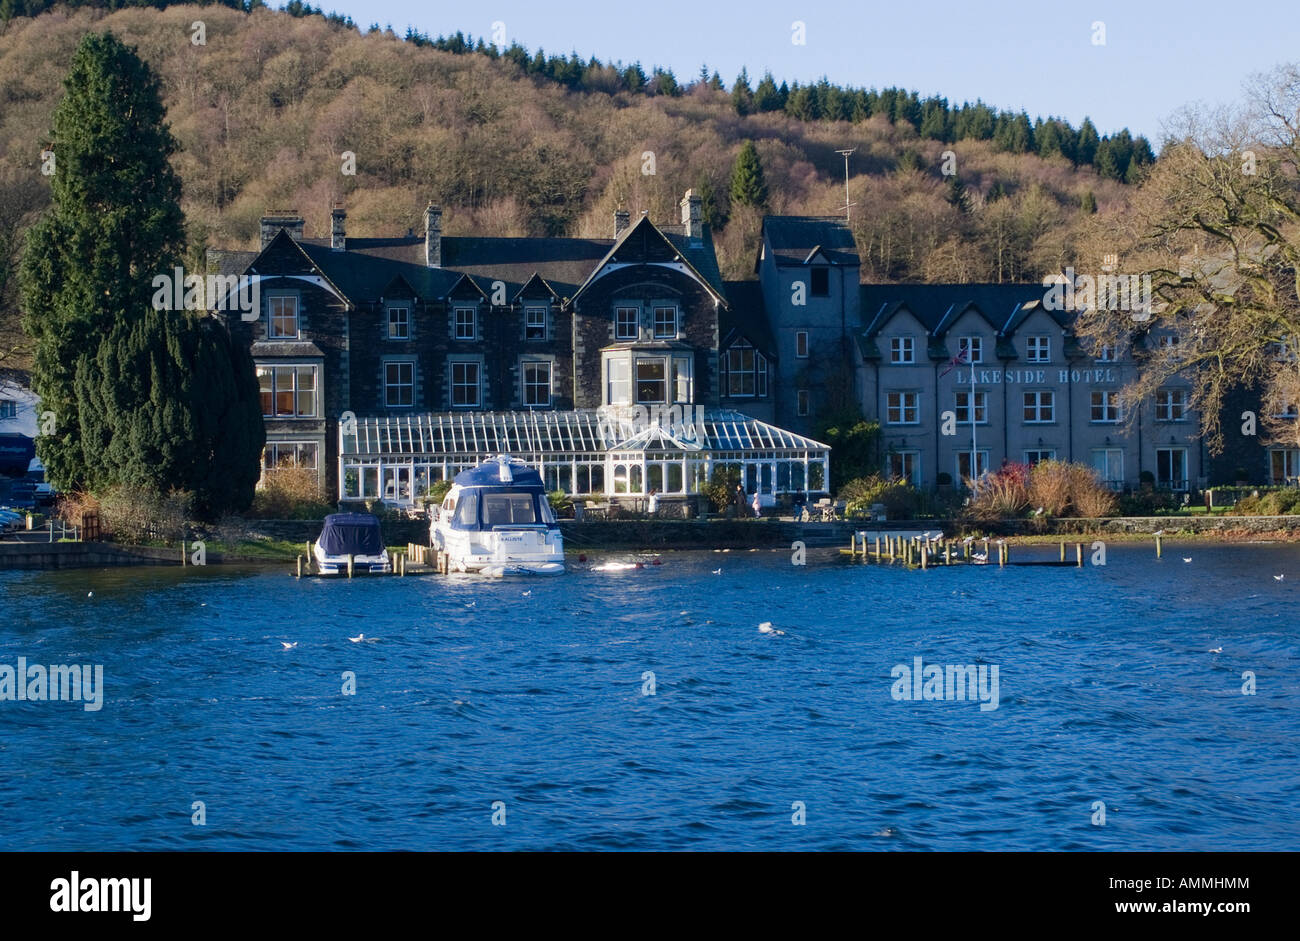 Lakeside Hotel on the Banks of Lake Windermere Lake District National Park  Cumbria England United Kingdom UK Stock Photo - Alamy